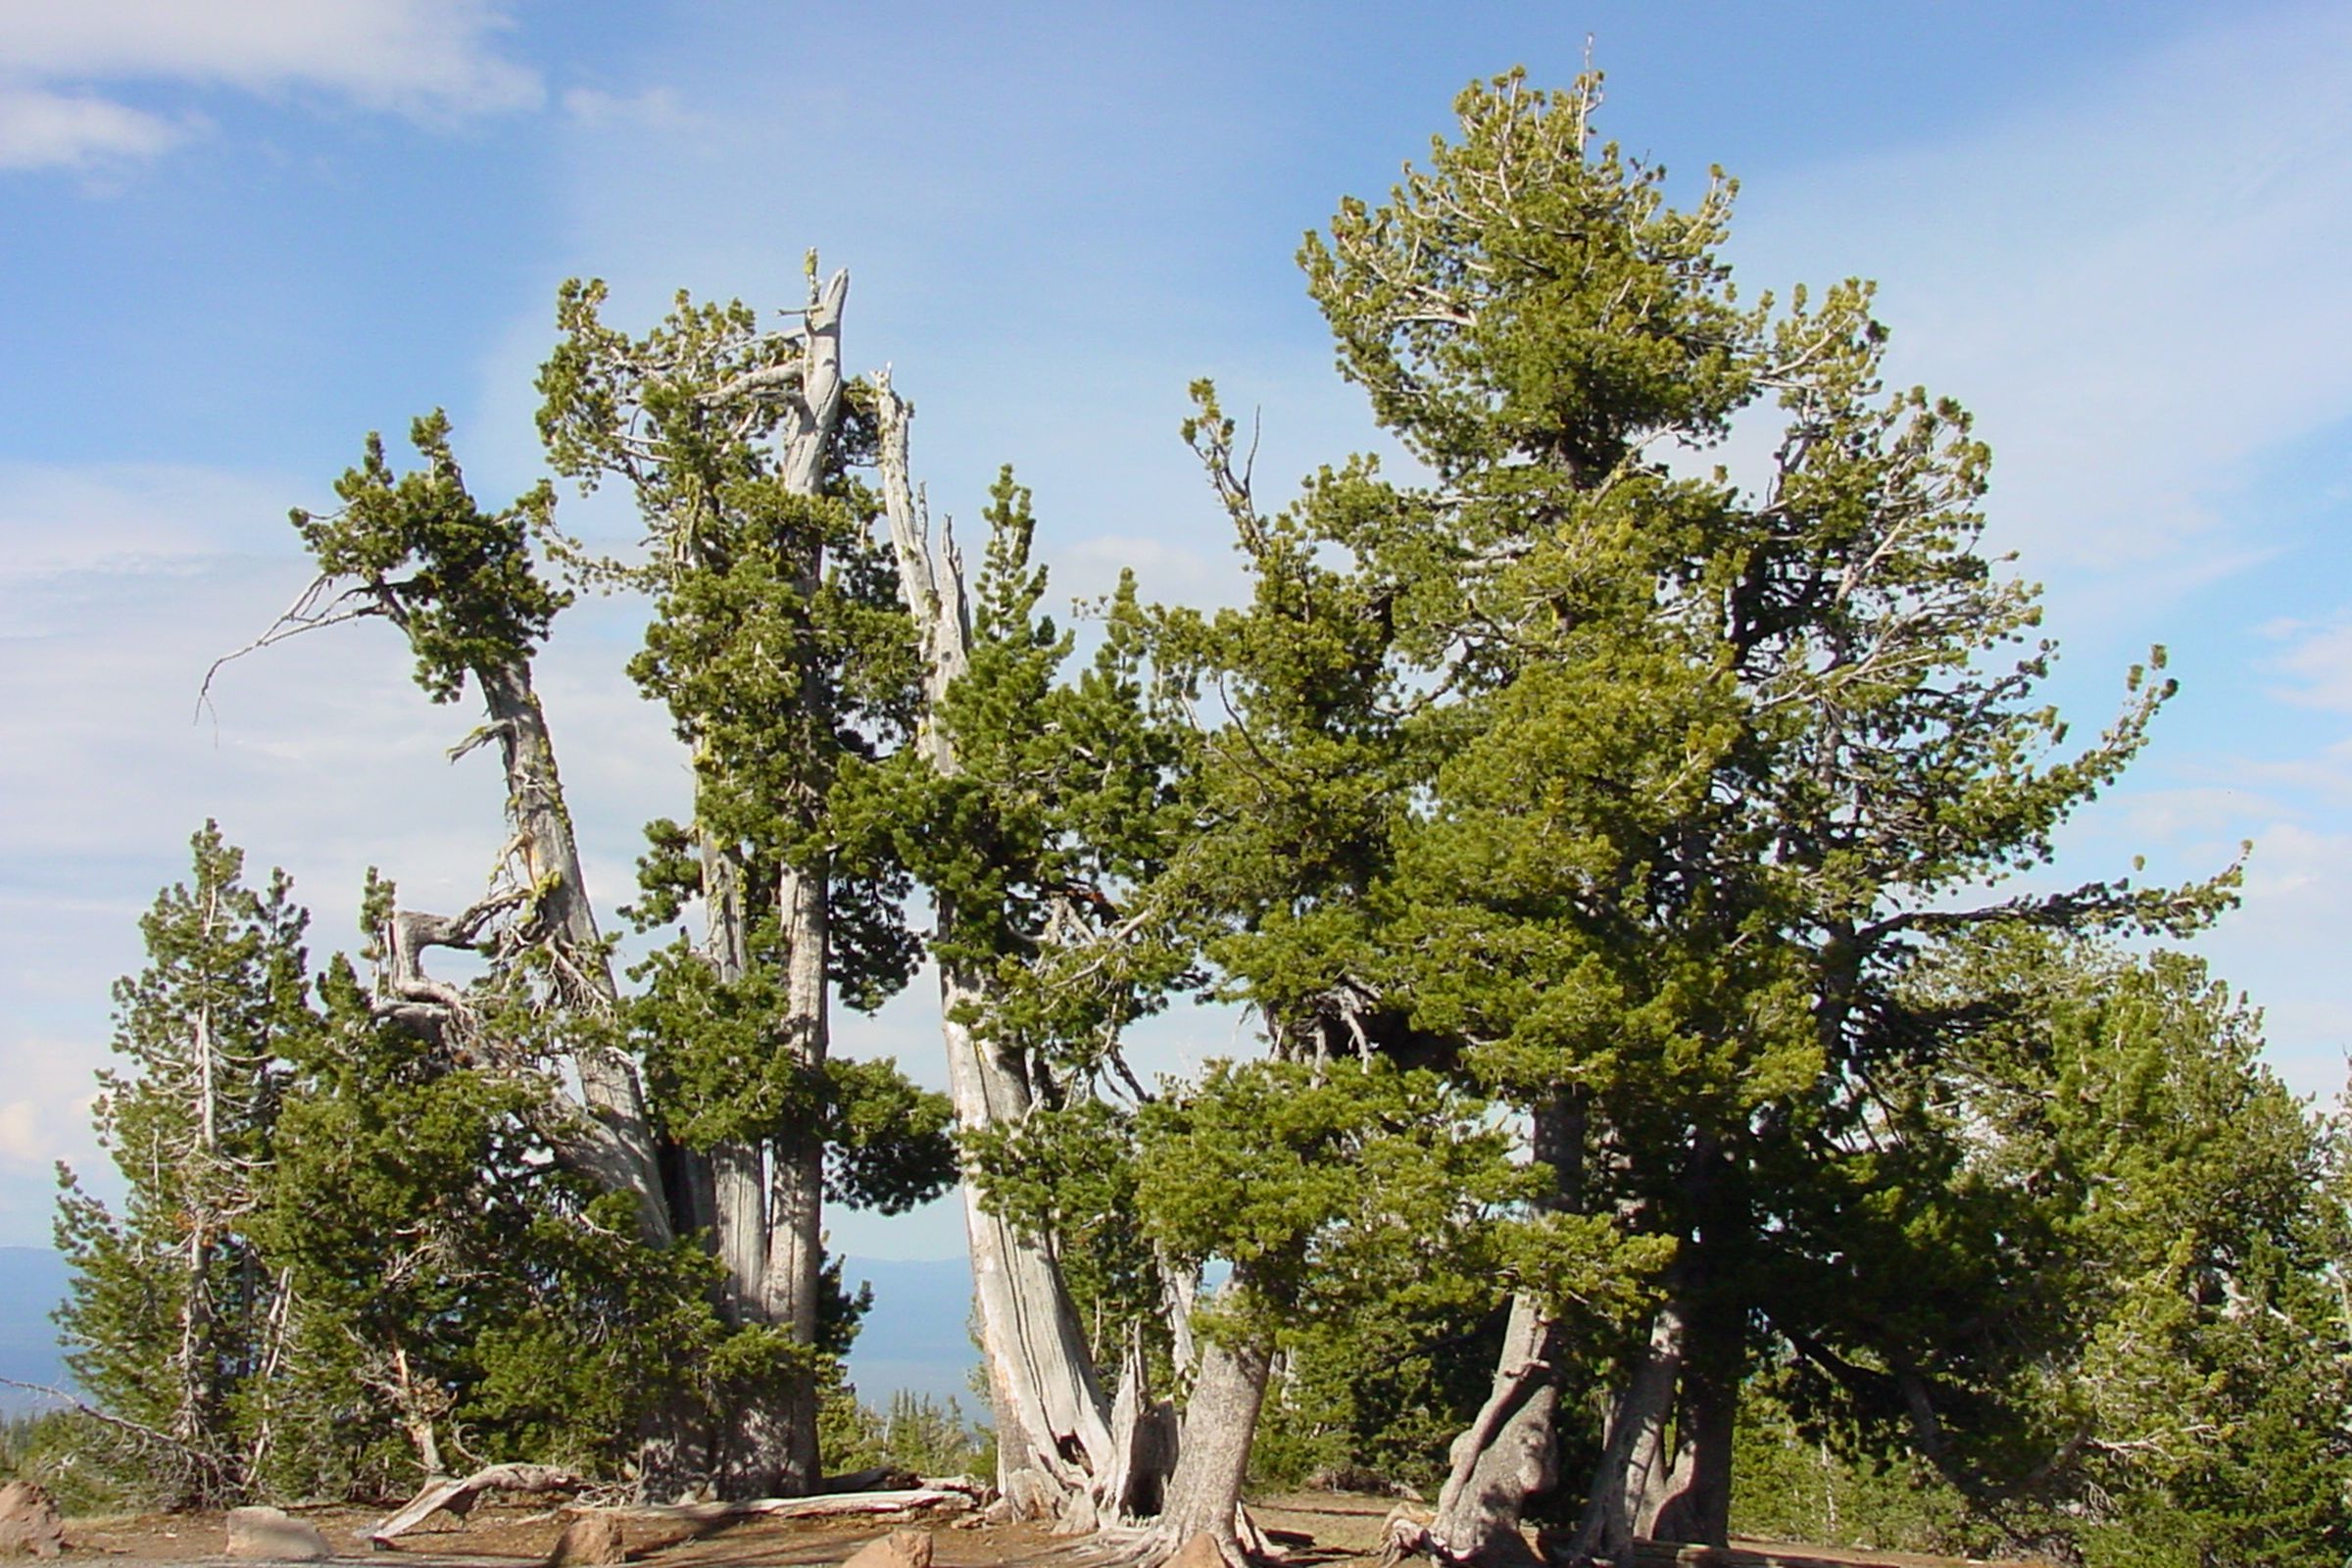 Whitebark pines